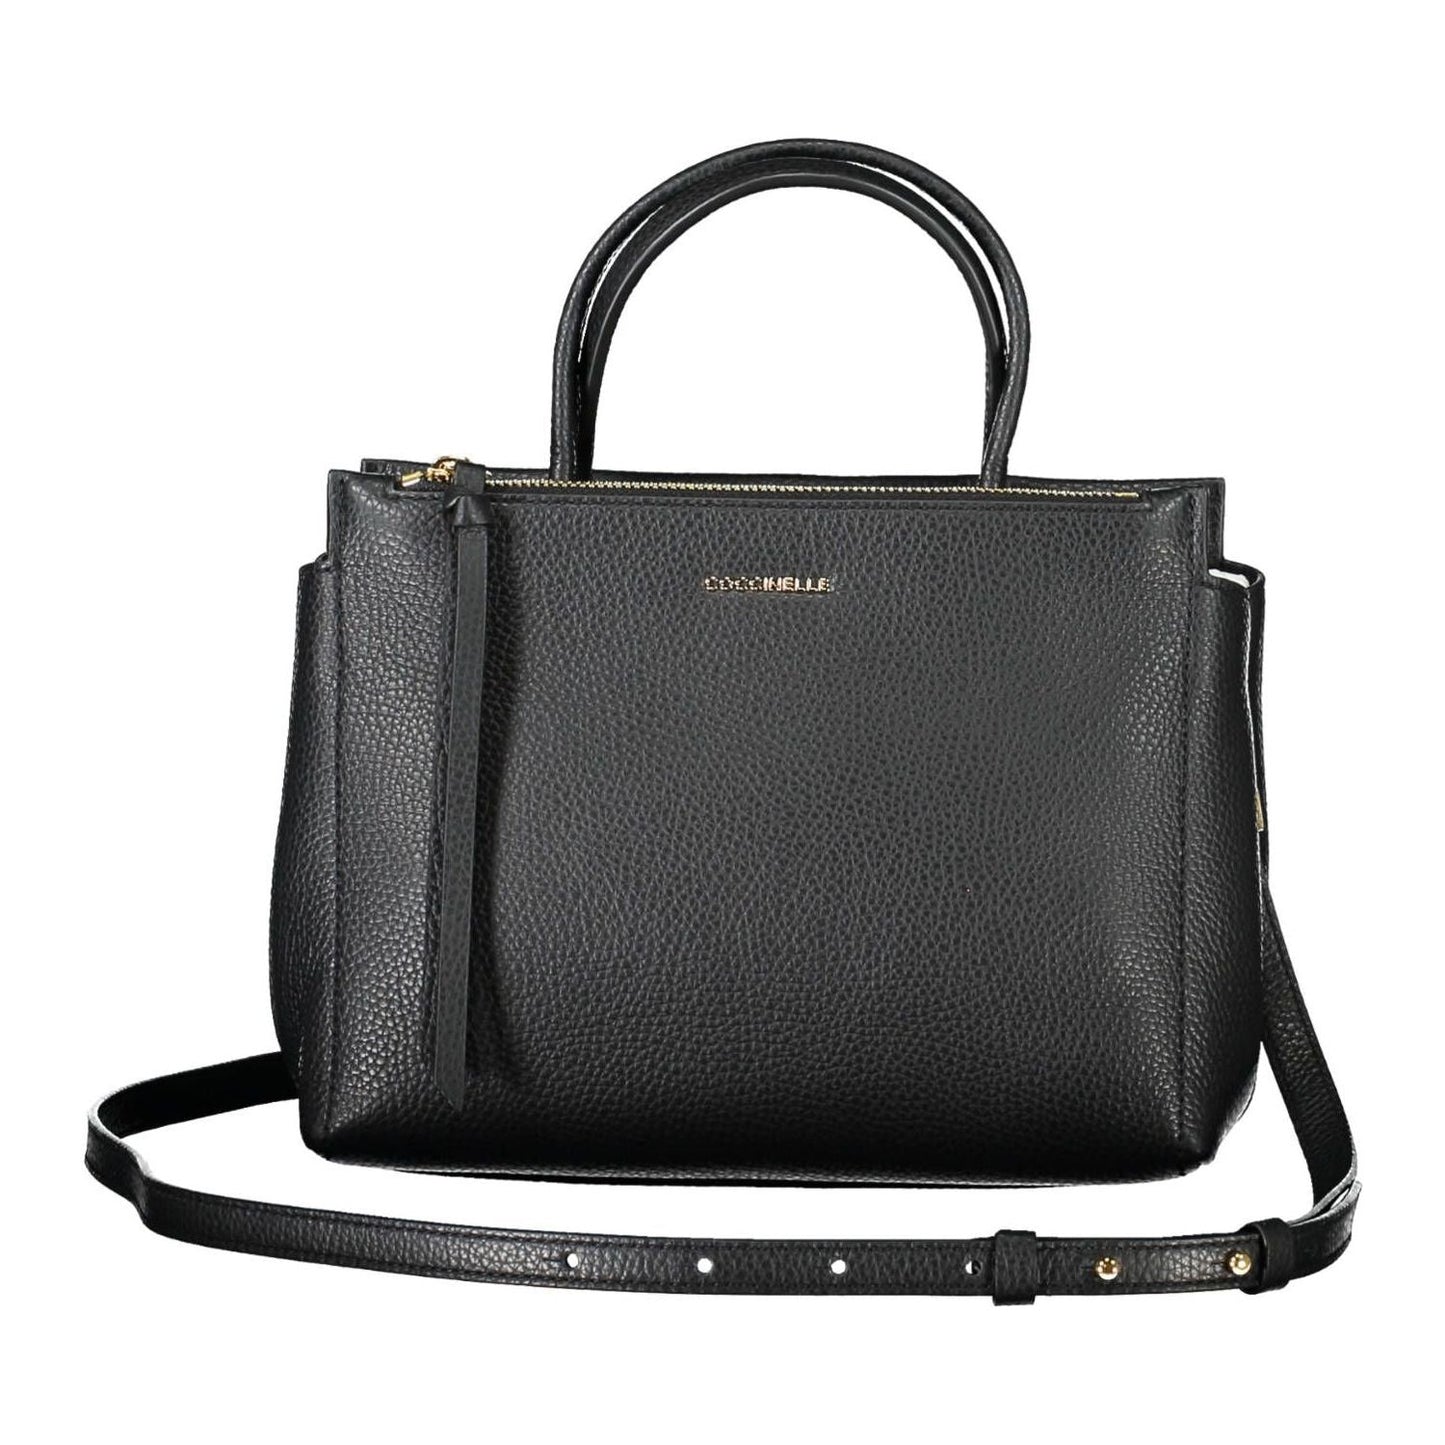 Coccinelle | Elegant Black Leather Handbag With Versatile Straps| McRichard Designer Brands   